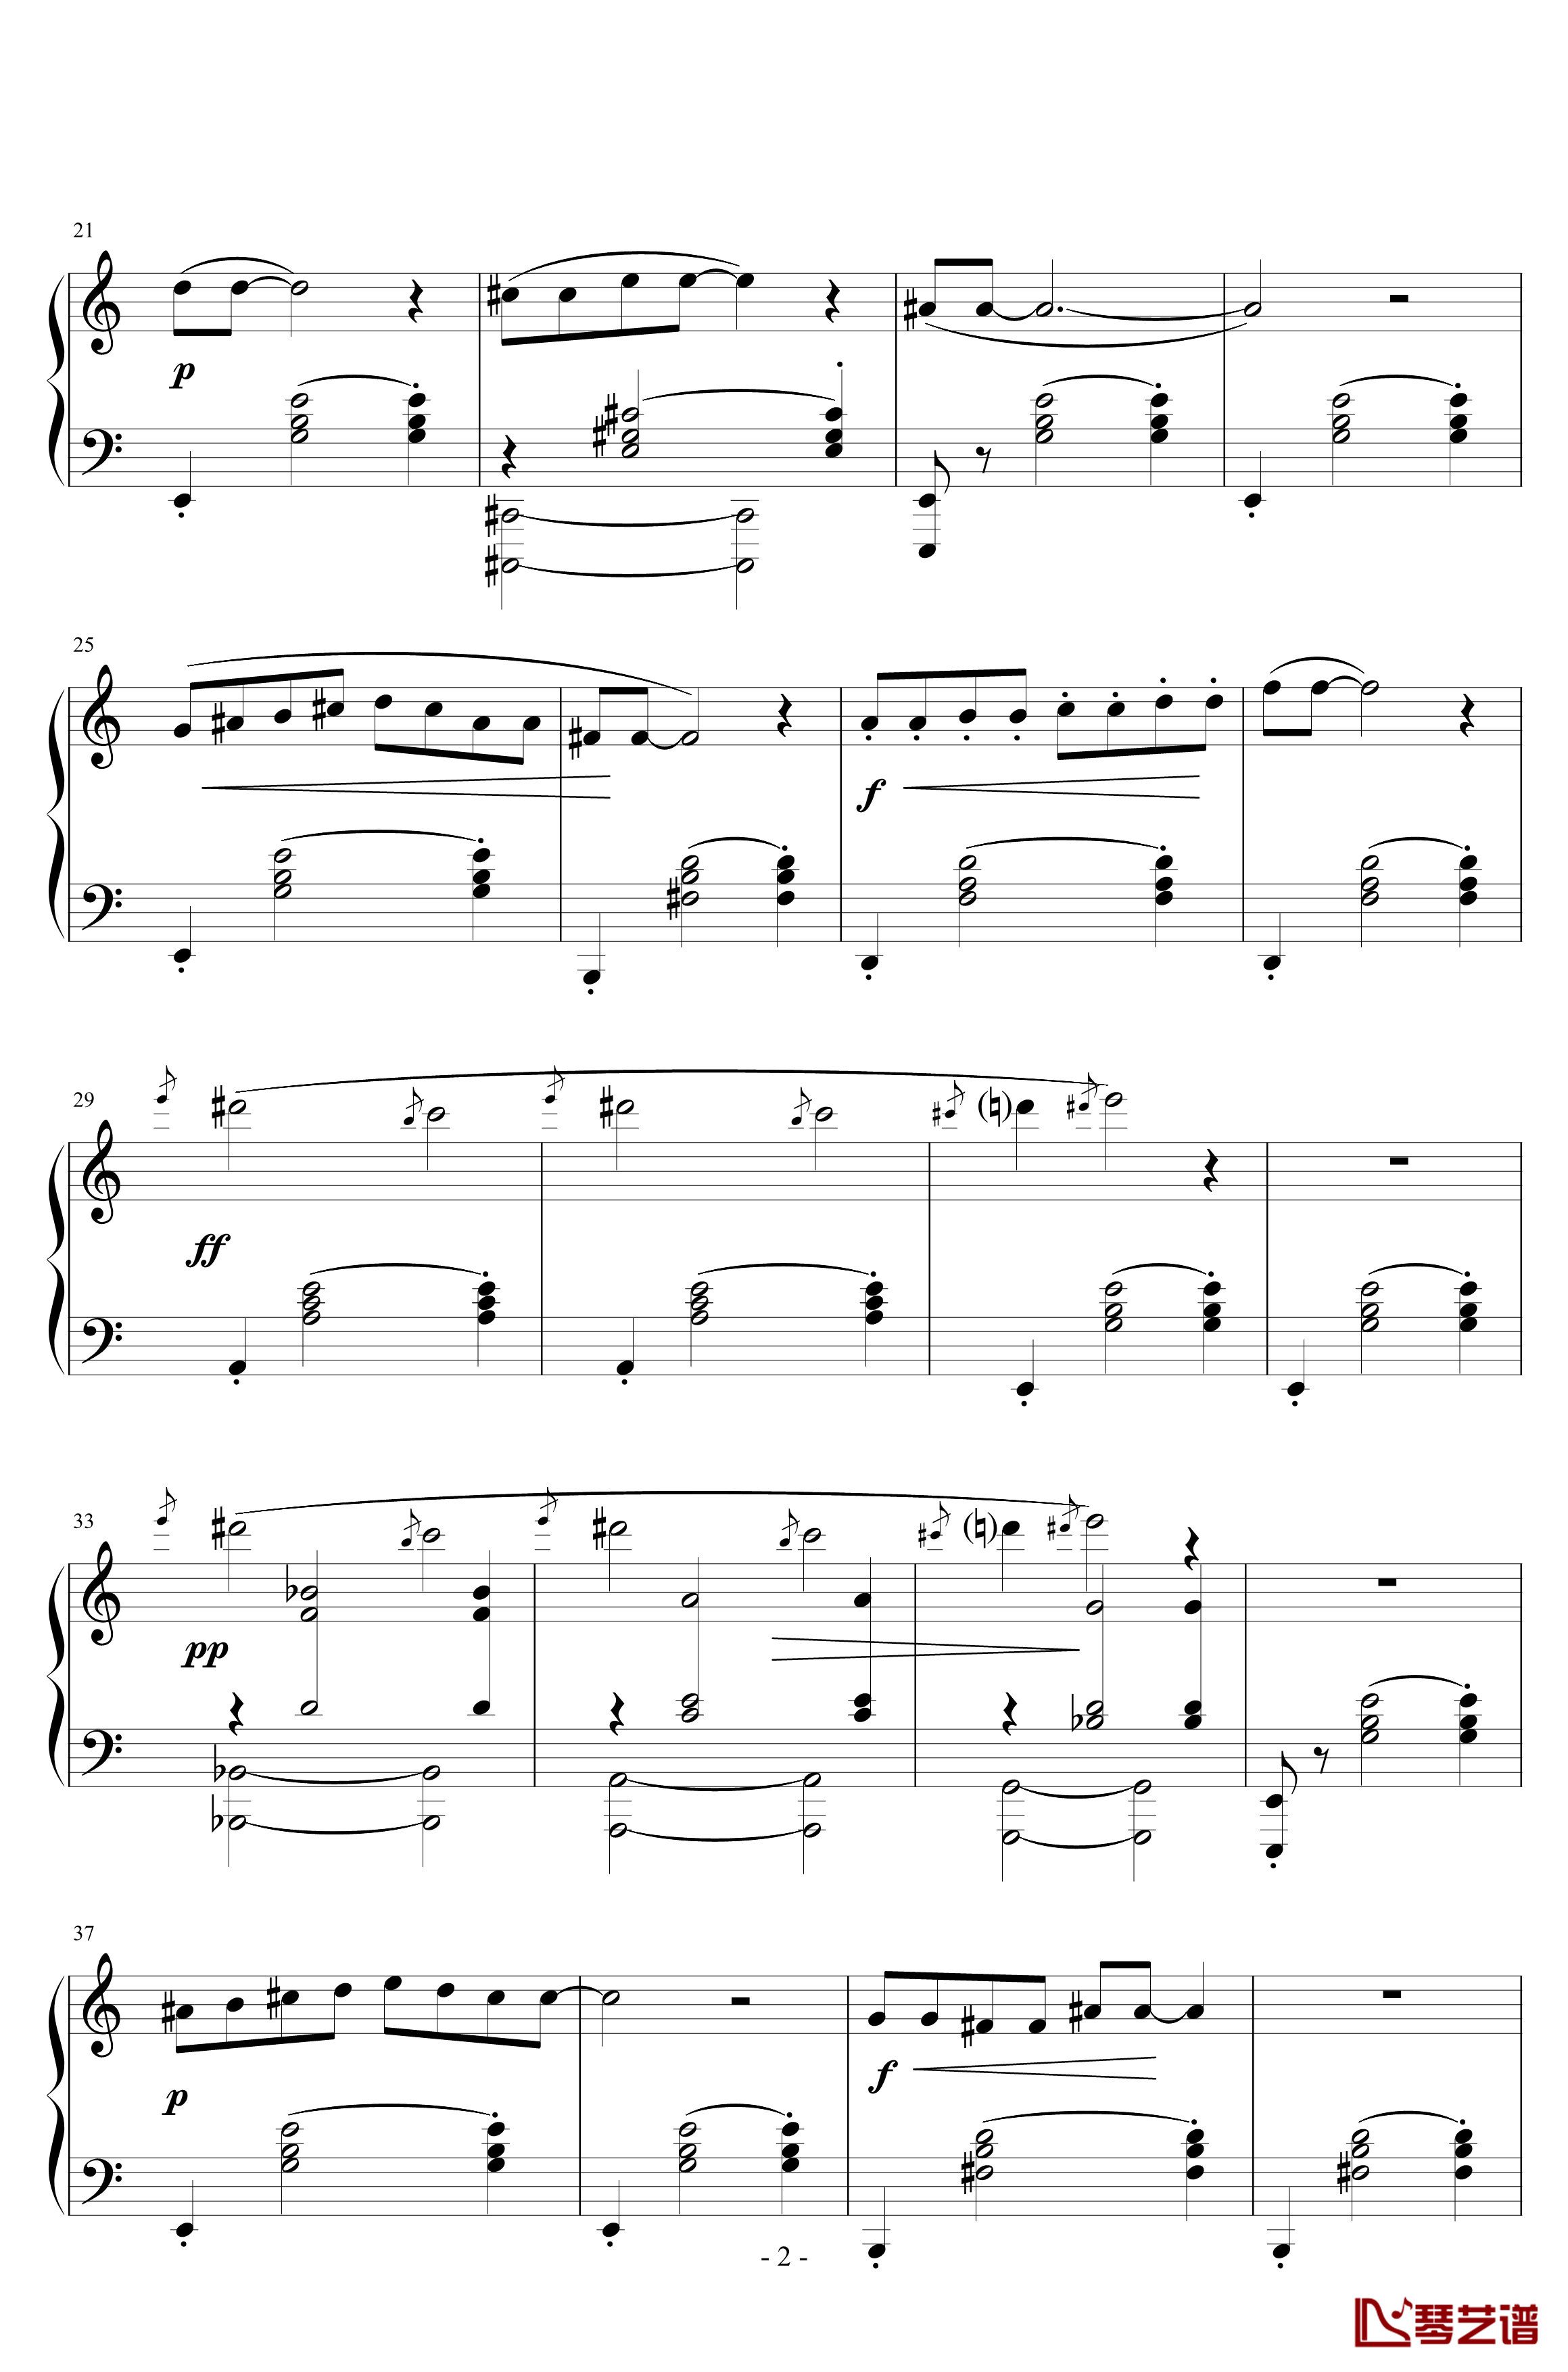 三首梨形小品钢琴谱-序奏-说话在先-沙拉萨蒂-萨蒂2